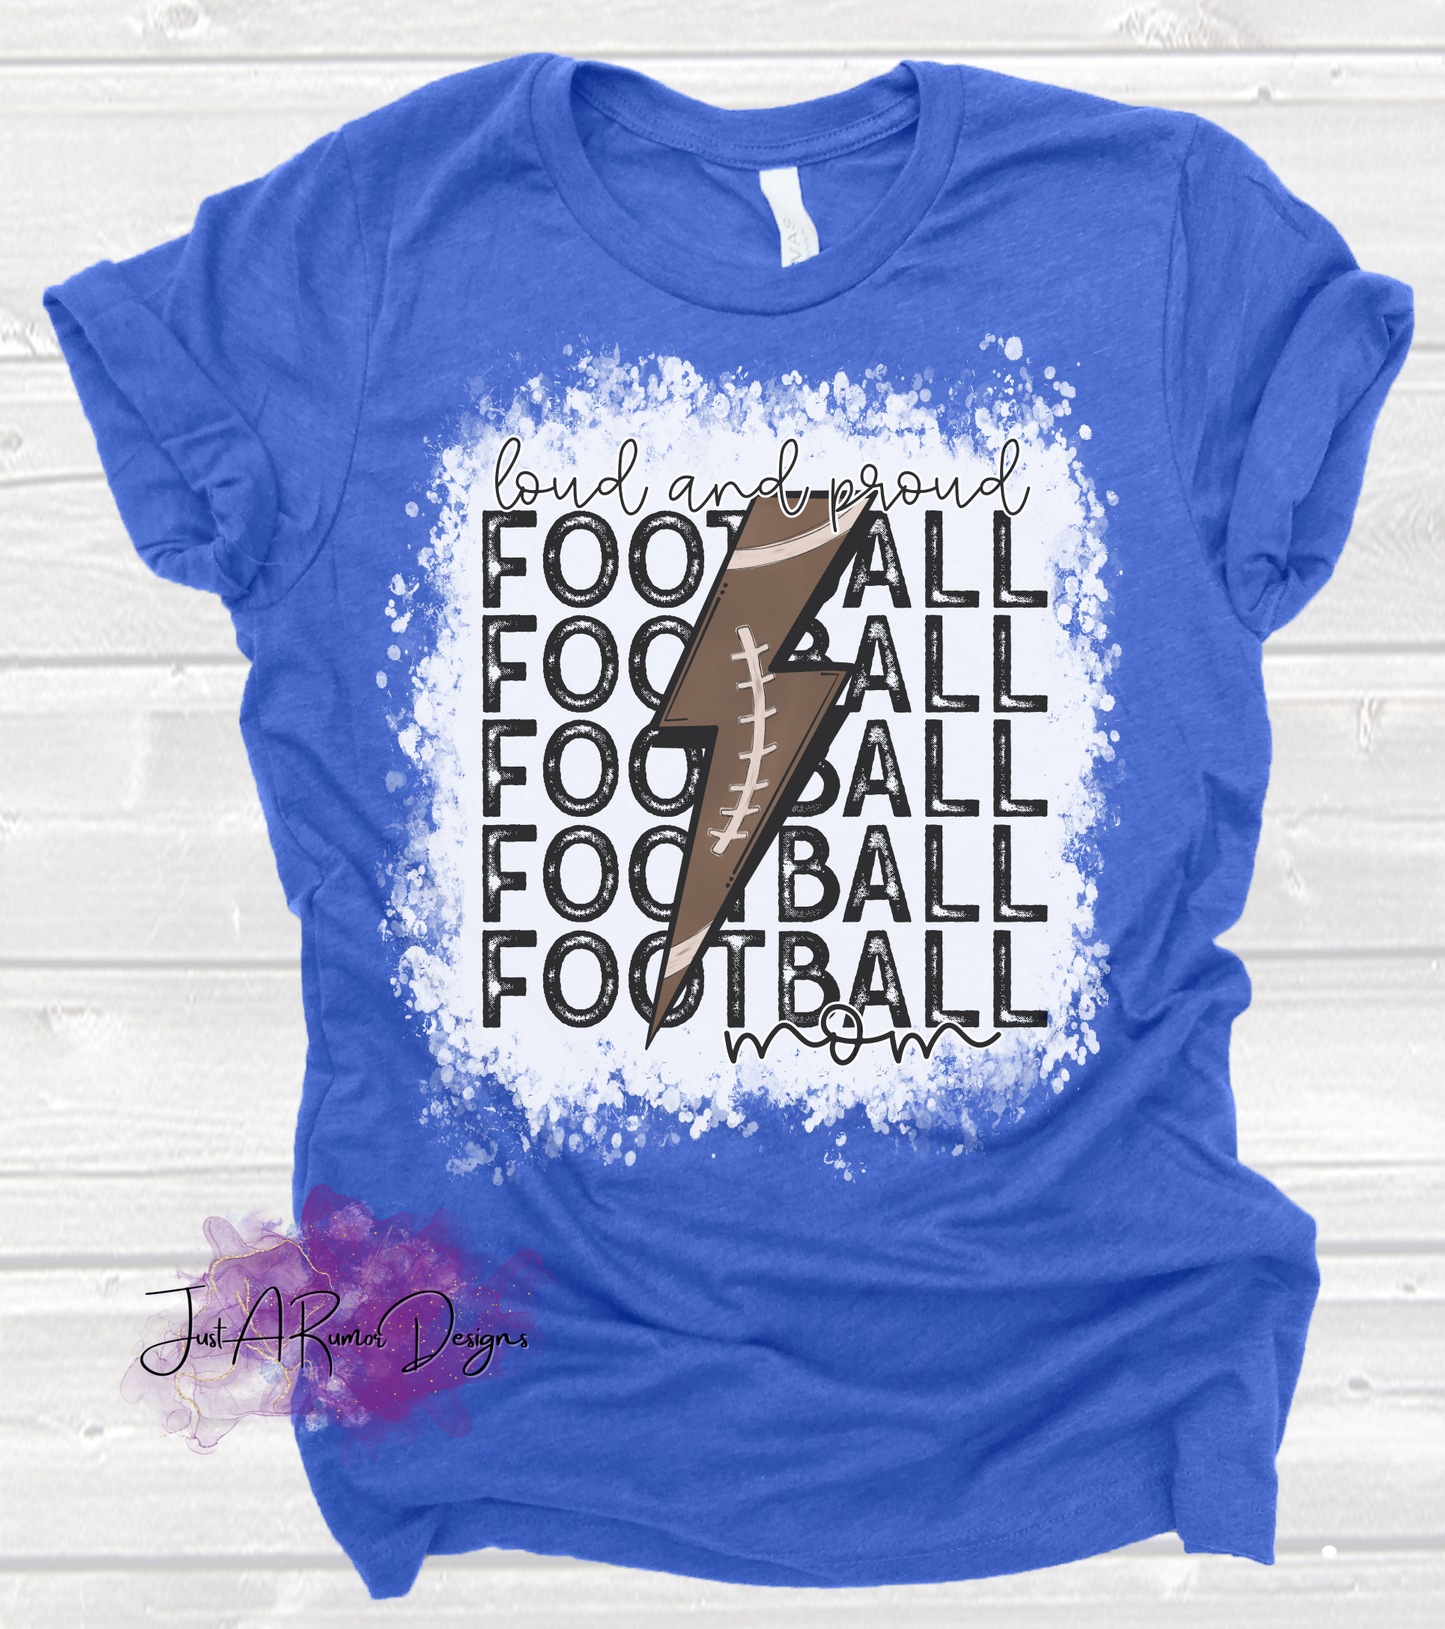 Loud & Proud Football Mom Shirt